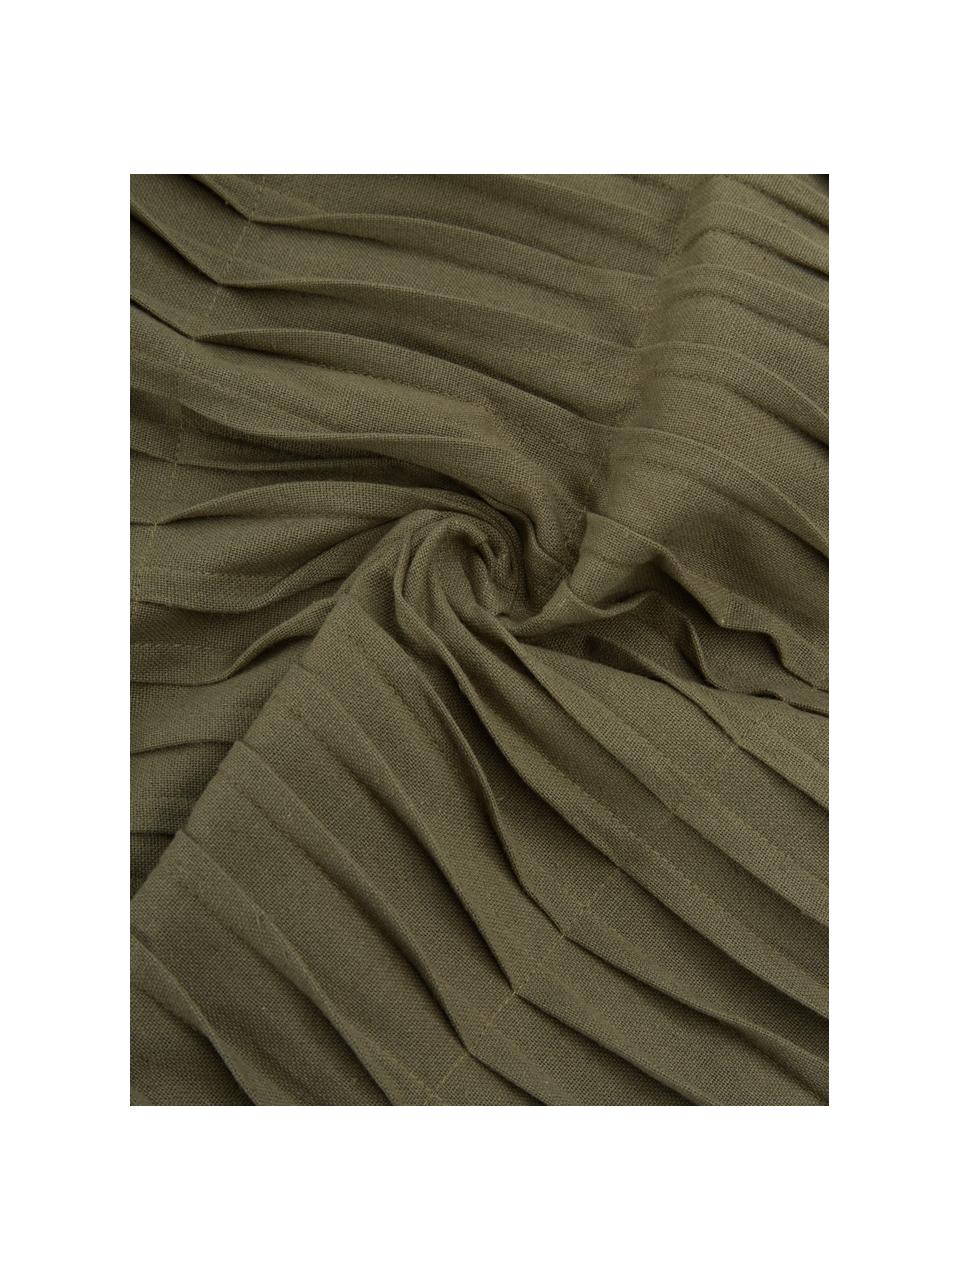 Baumwollkissen Pleated mit geraffter Oberfläche in Olivegrün, mit Inlett, 100% Baumwolle, Olivegrün, 45 x 45 cm